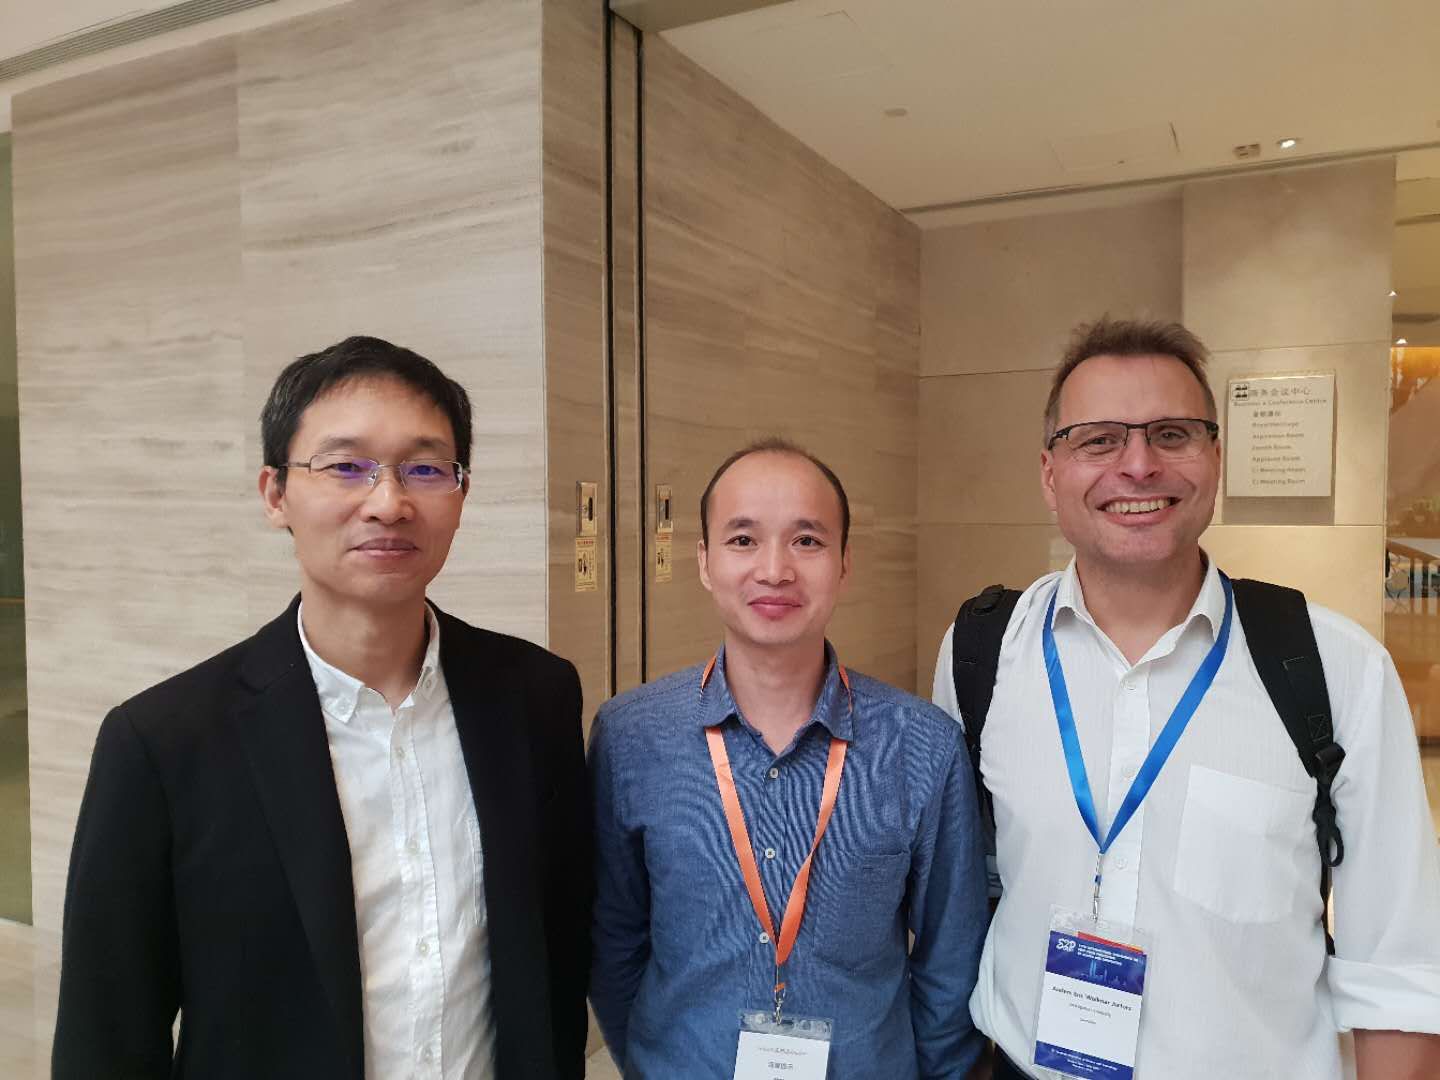 Haiping Cao, Zeng och Anders Jarfors står tillsammans i korridoren på ett konferenscenter.